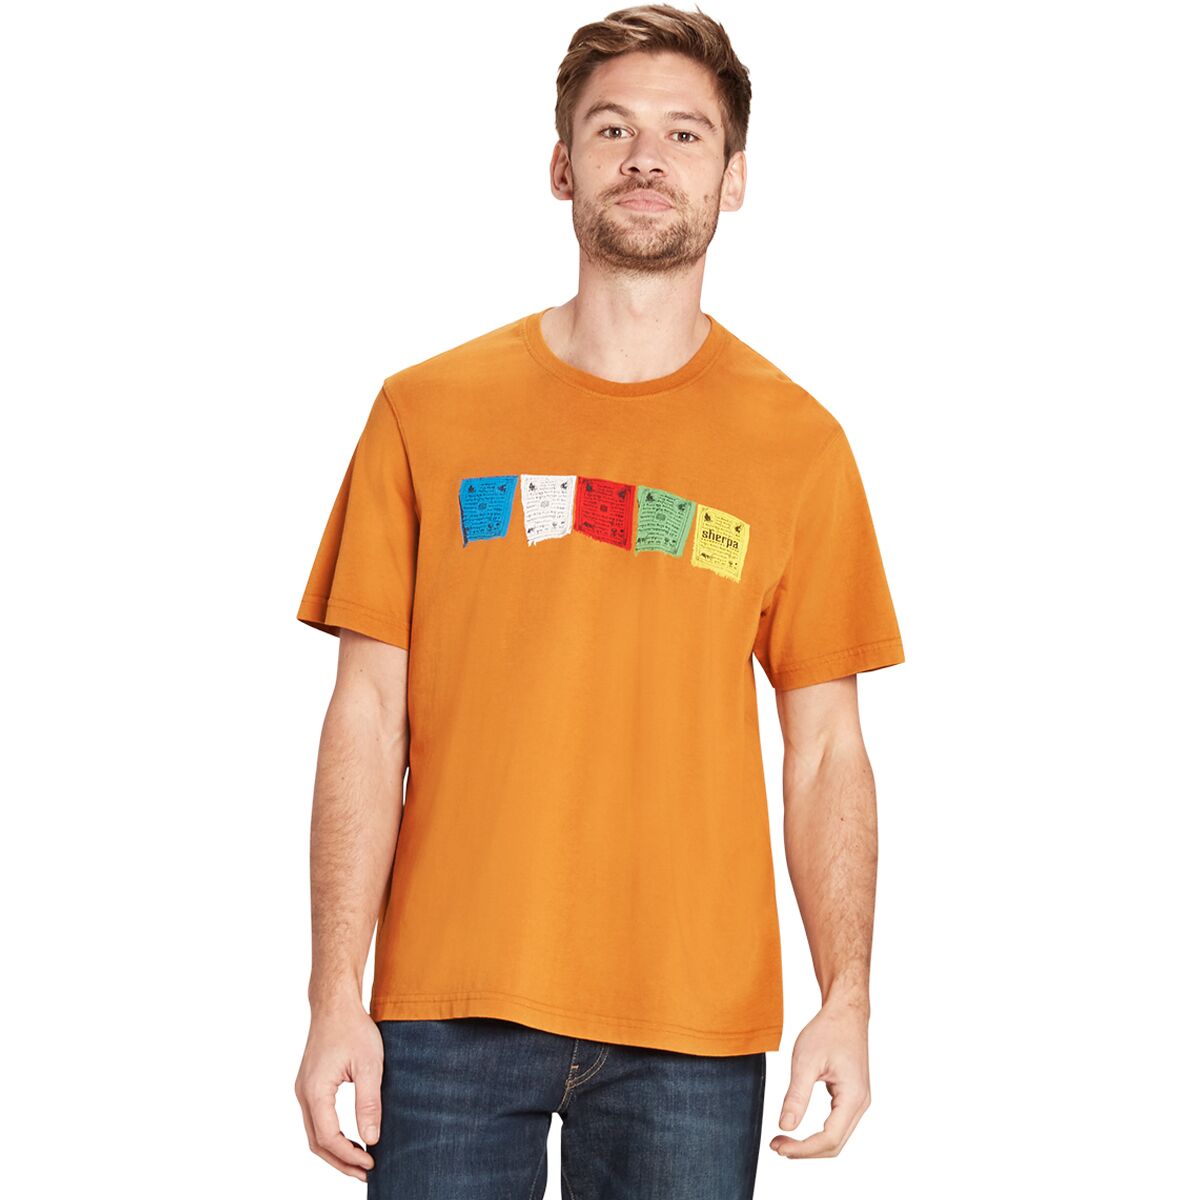 Tarcho T-Shirt - Men